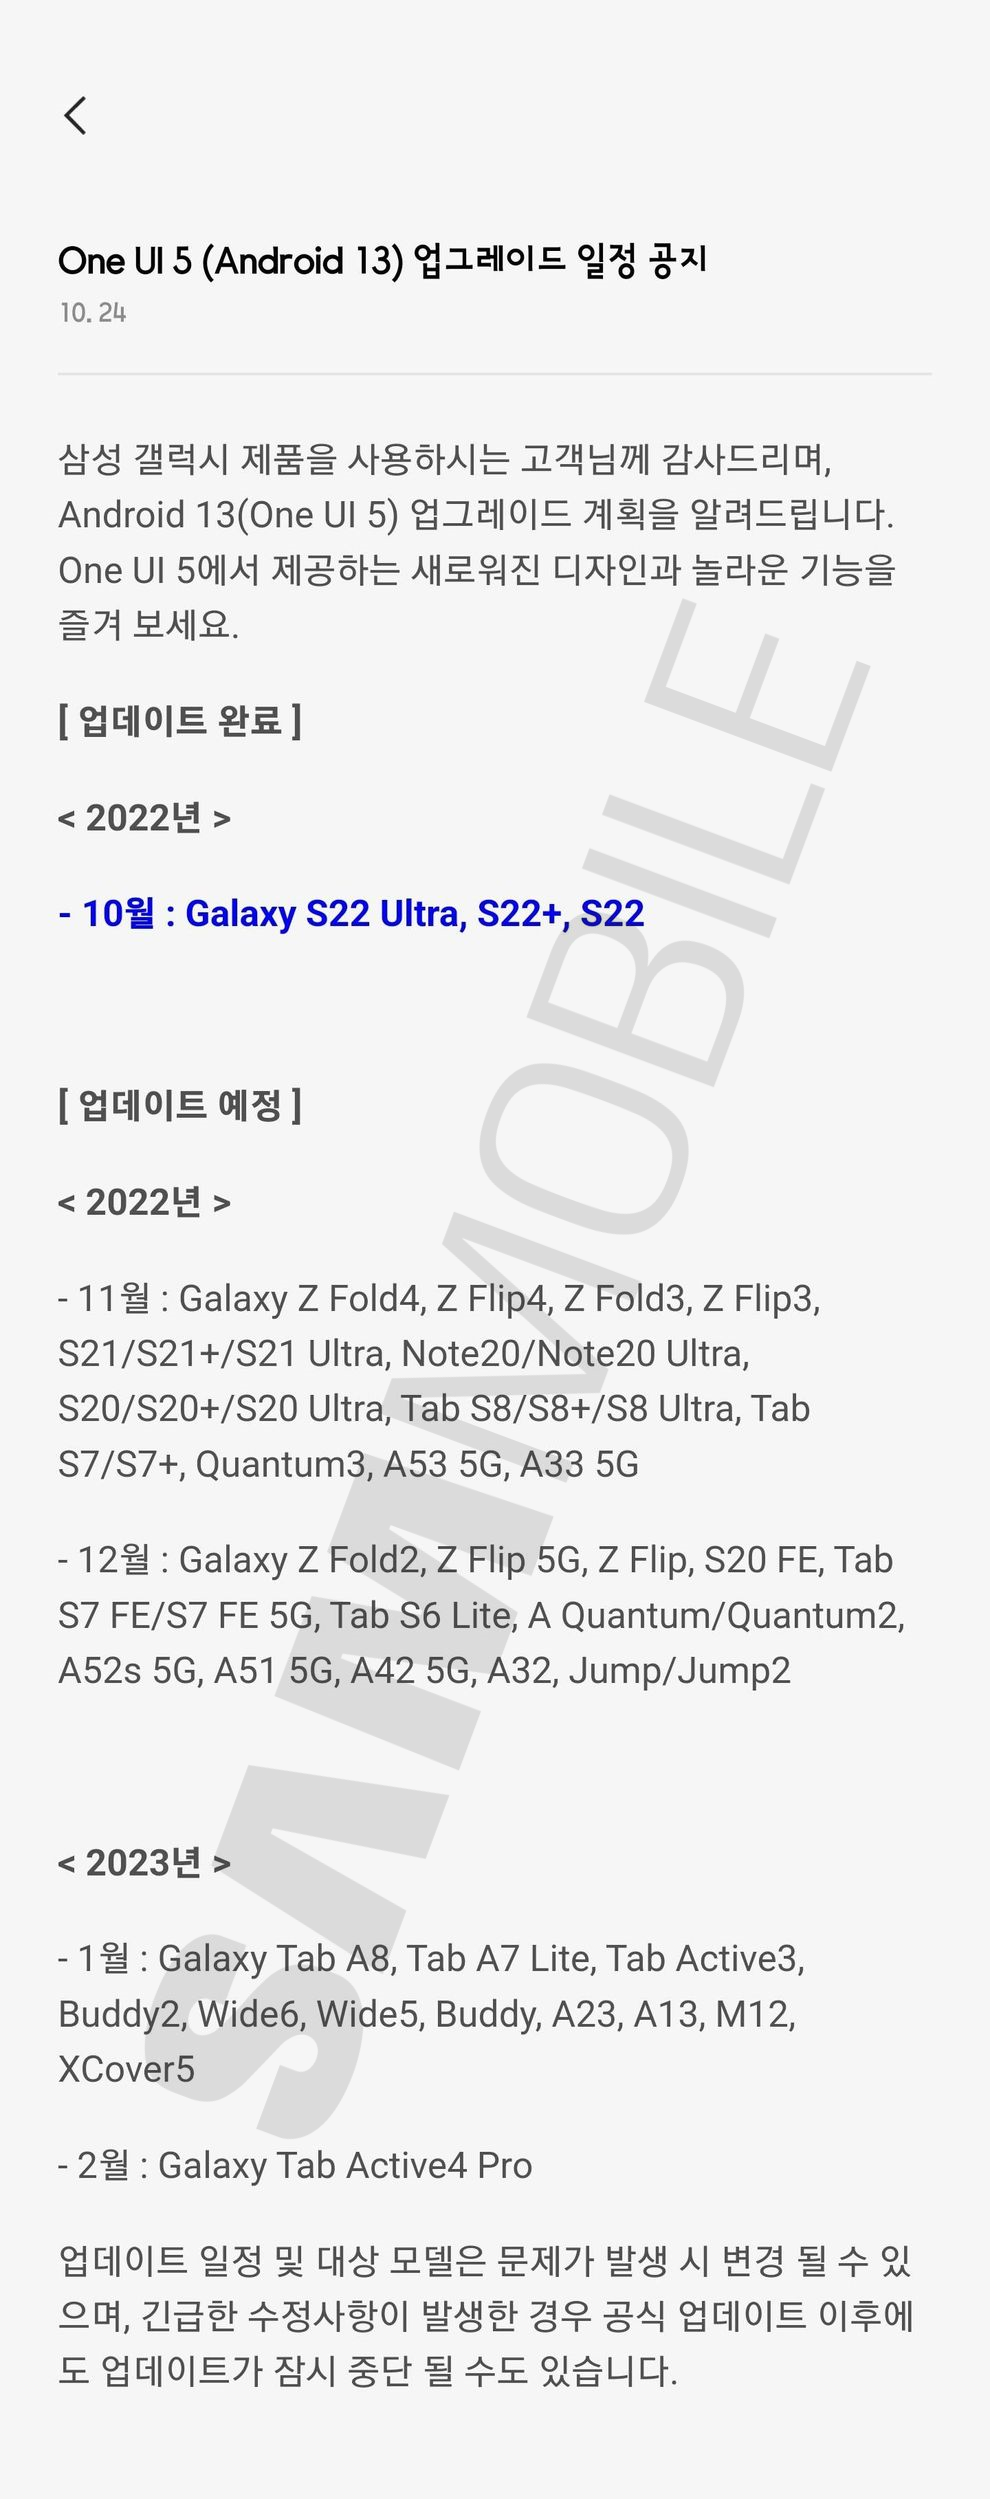 Lista de actualizaciones Android 13 Samsung